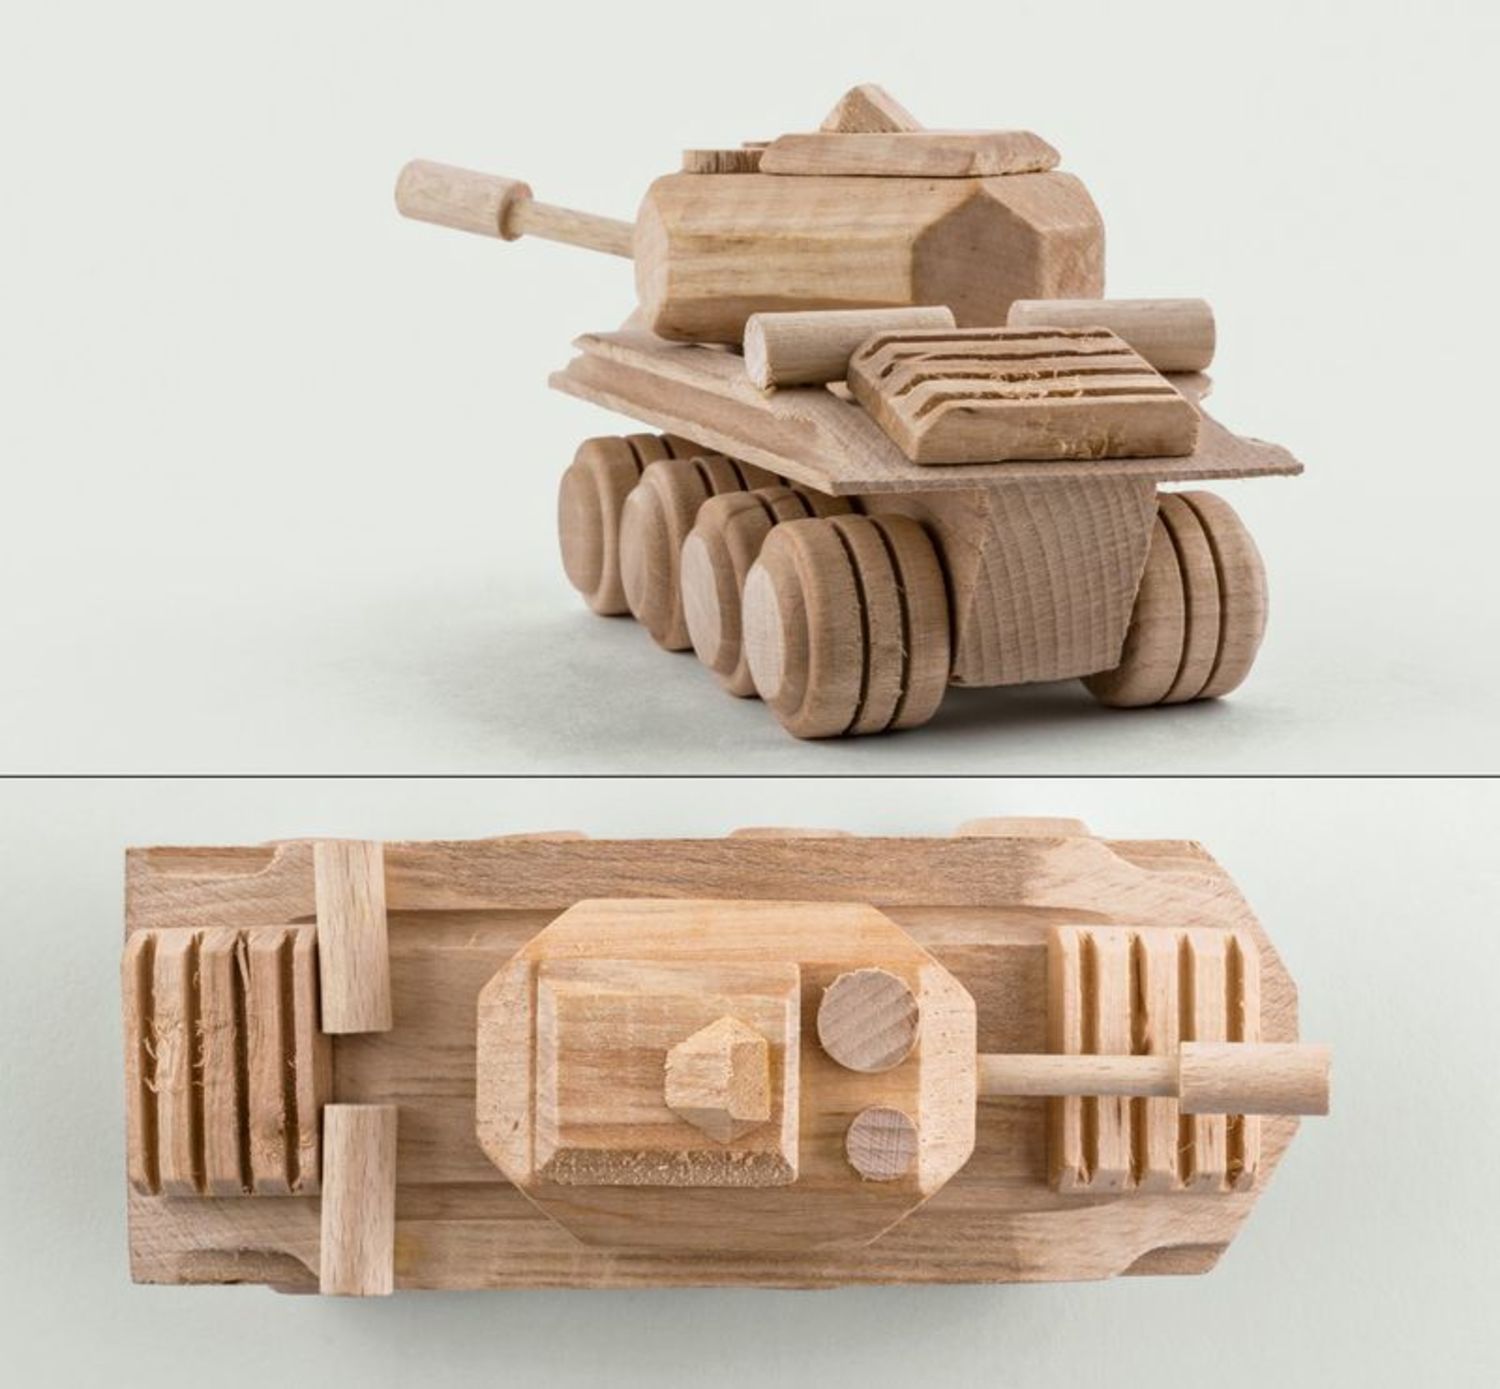 Juguete de madera hecho a mano “Tanque” foto 3